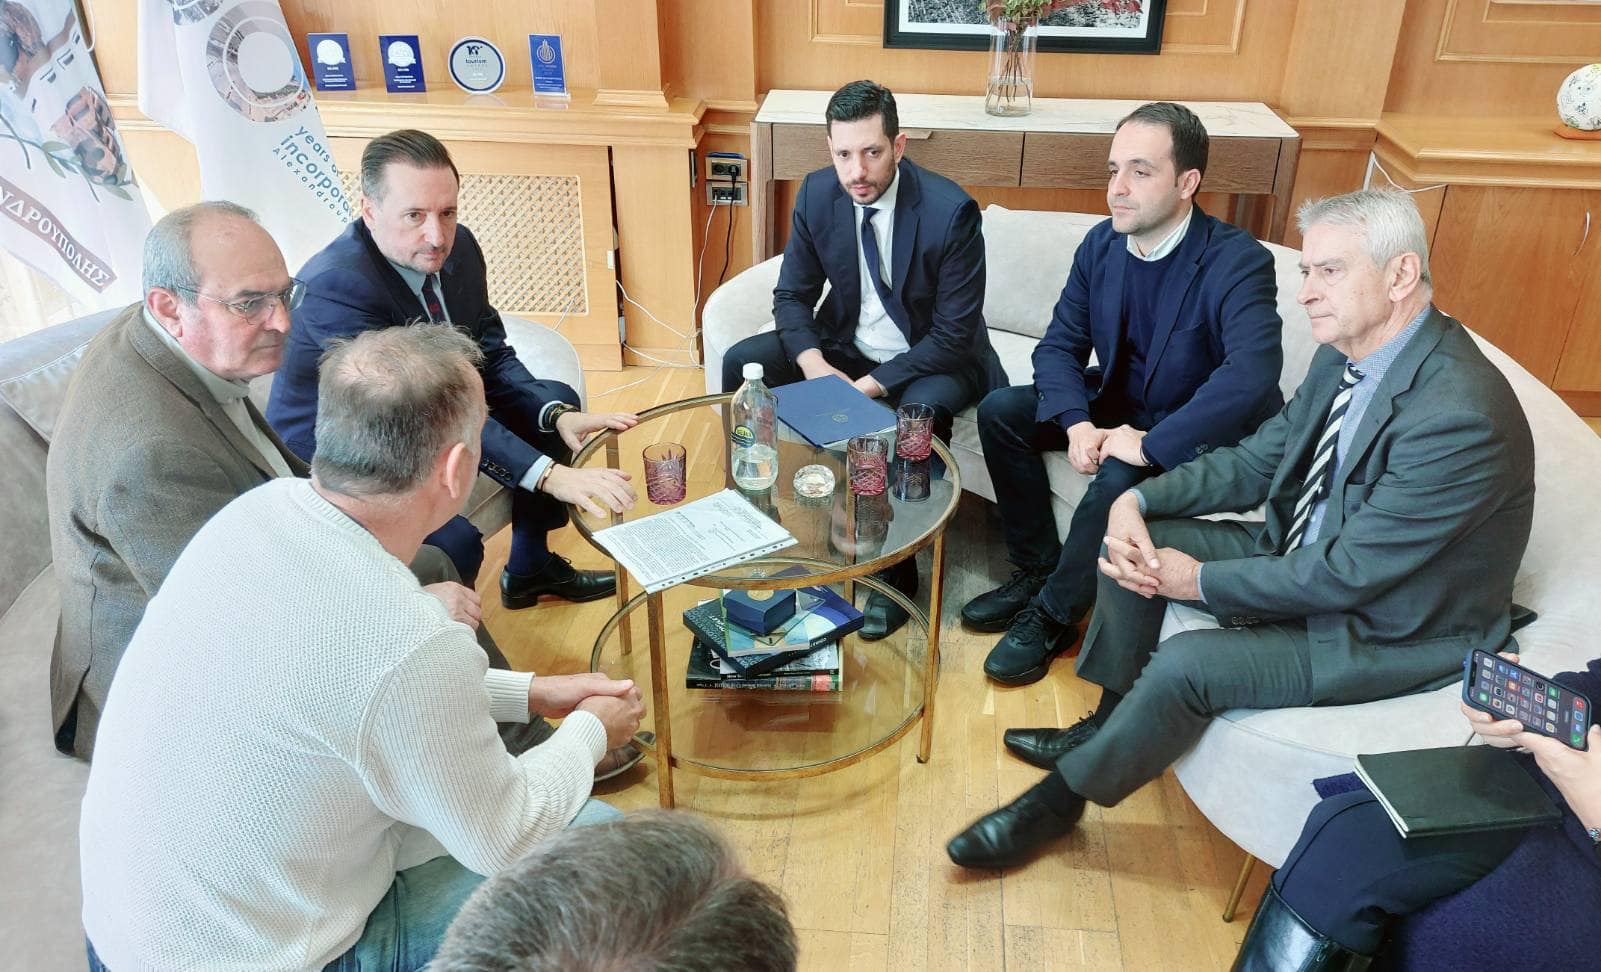 Ο Γιάννης Ζαμπούκης συναντήθηκε με τον υφυπουργό ψηφιακής διακυβέρνησης Κώστα Κυρανάκη